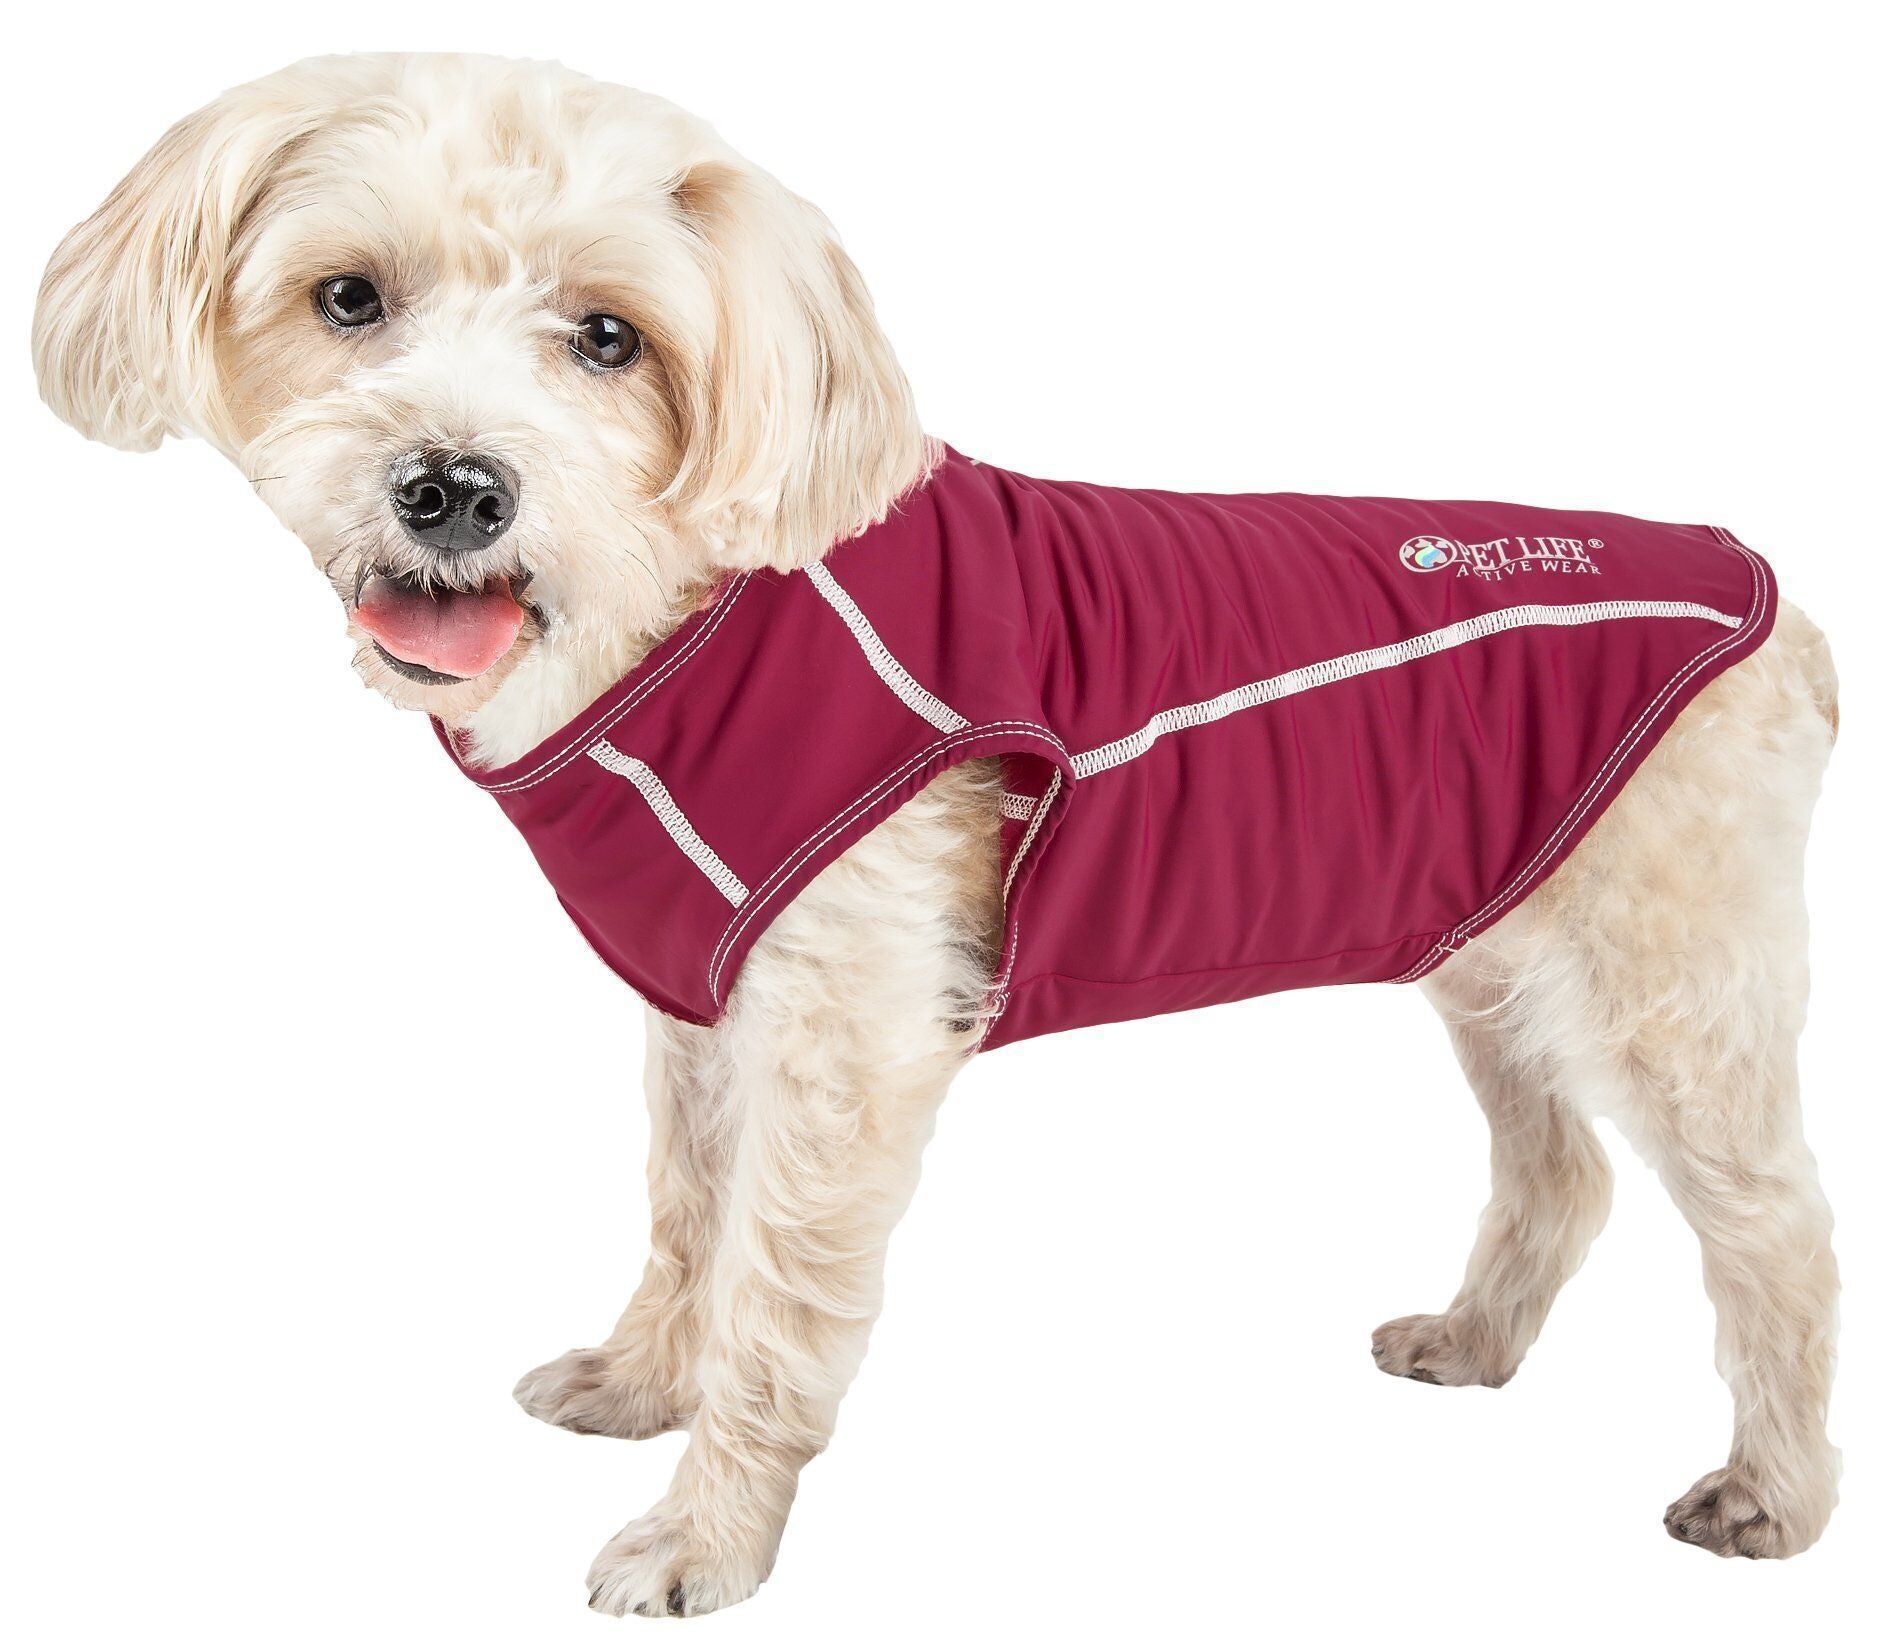 Pet Life Active 'Racerbark' 4-Way-Stretch Yoga Fitness Dog T-Shirt Tank Top Large